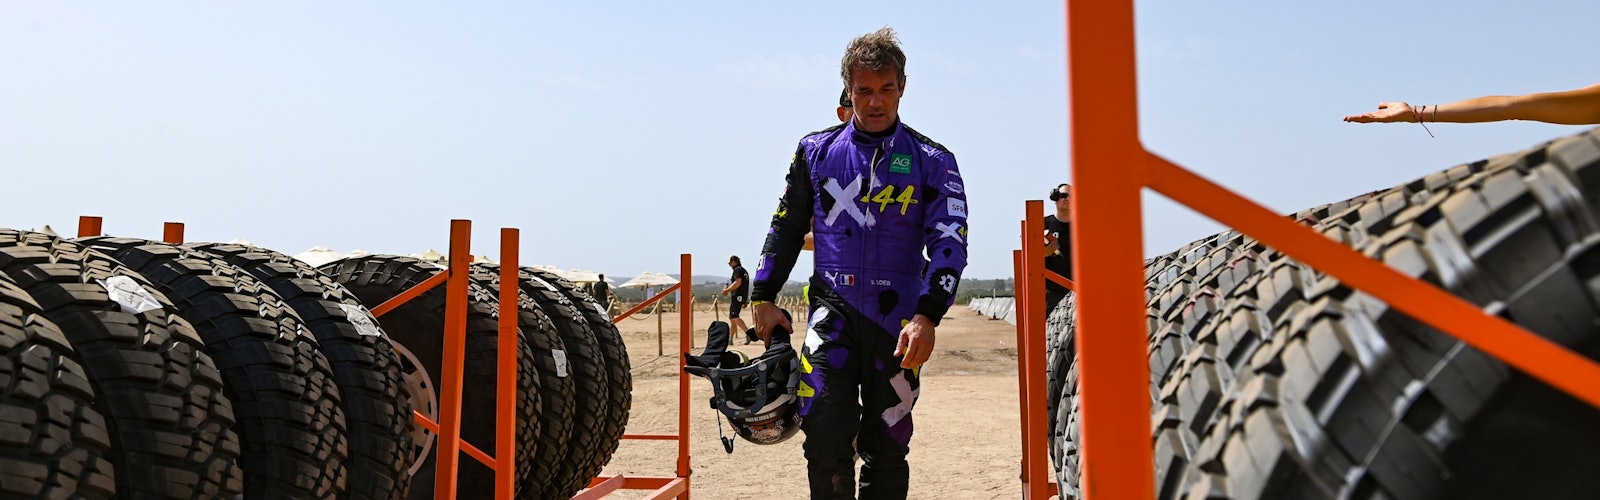 Sebastien Loeb (FRA), Team X44